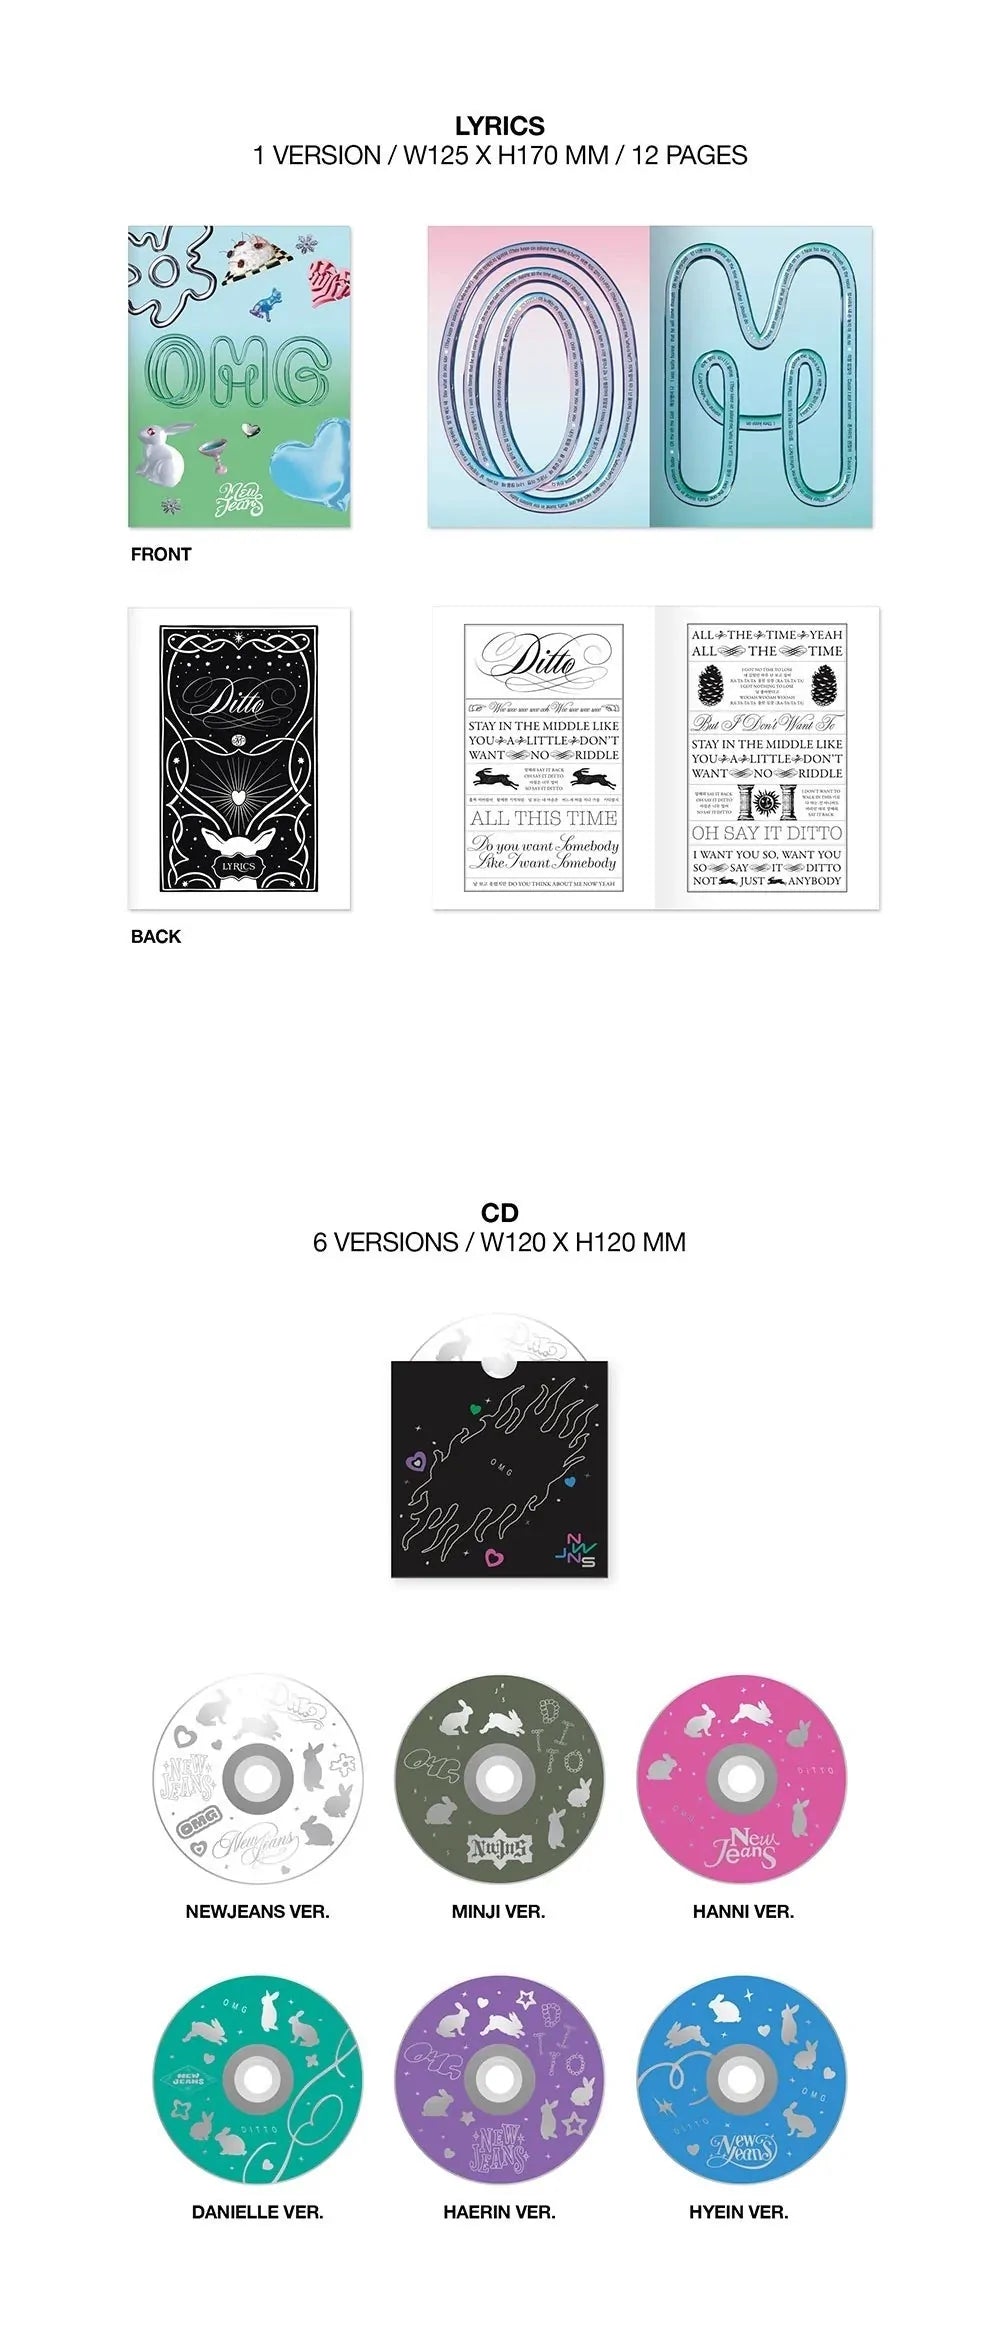 NewJeans - 1st Single Album 'OMG' (Message Card Version)